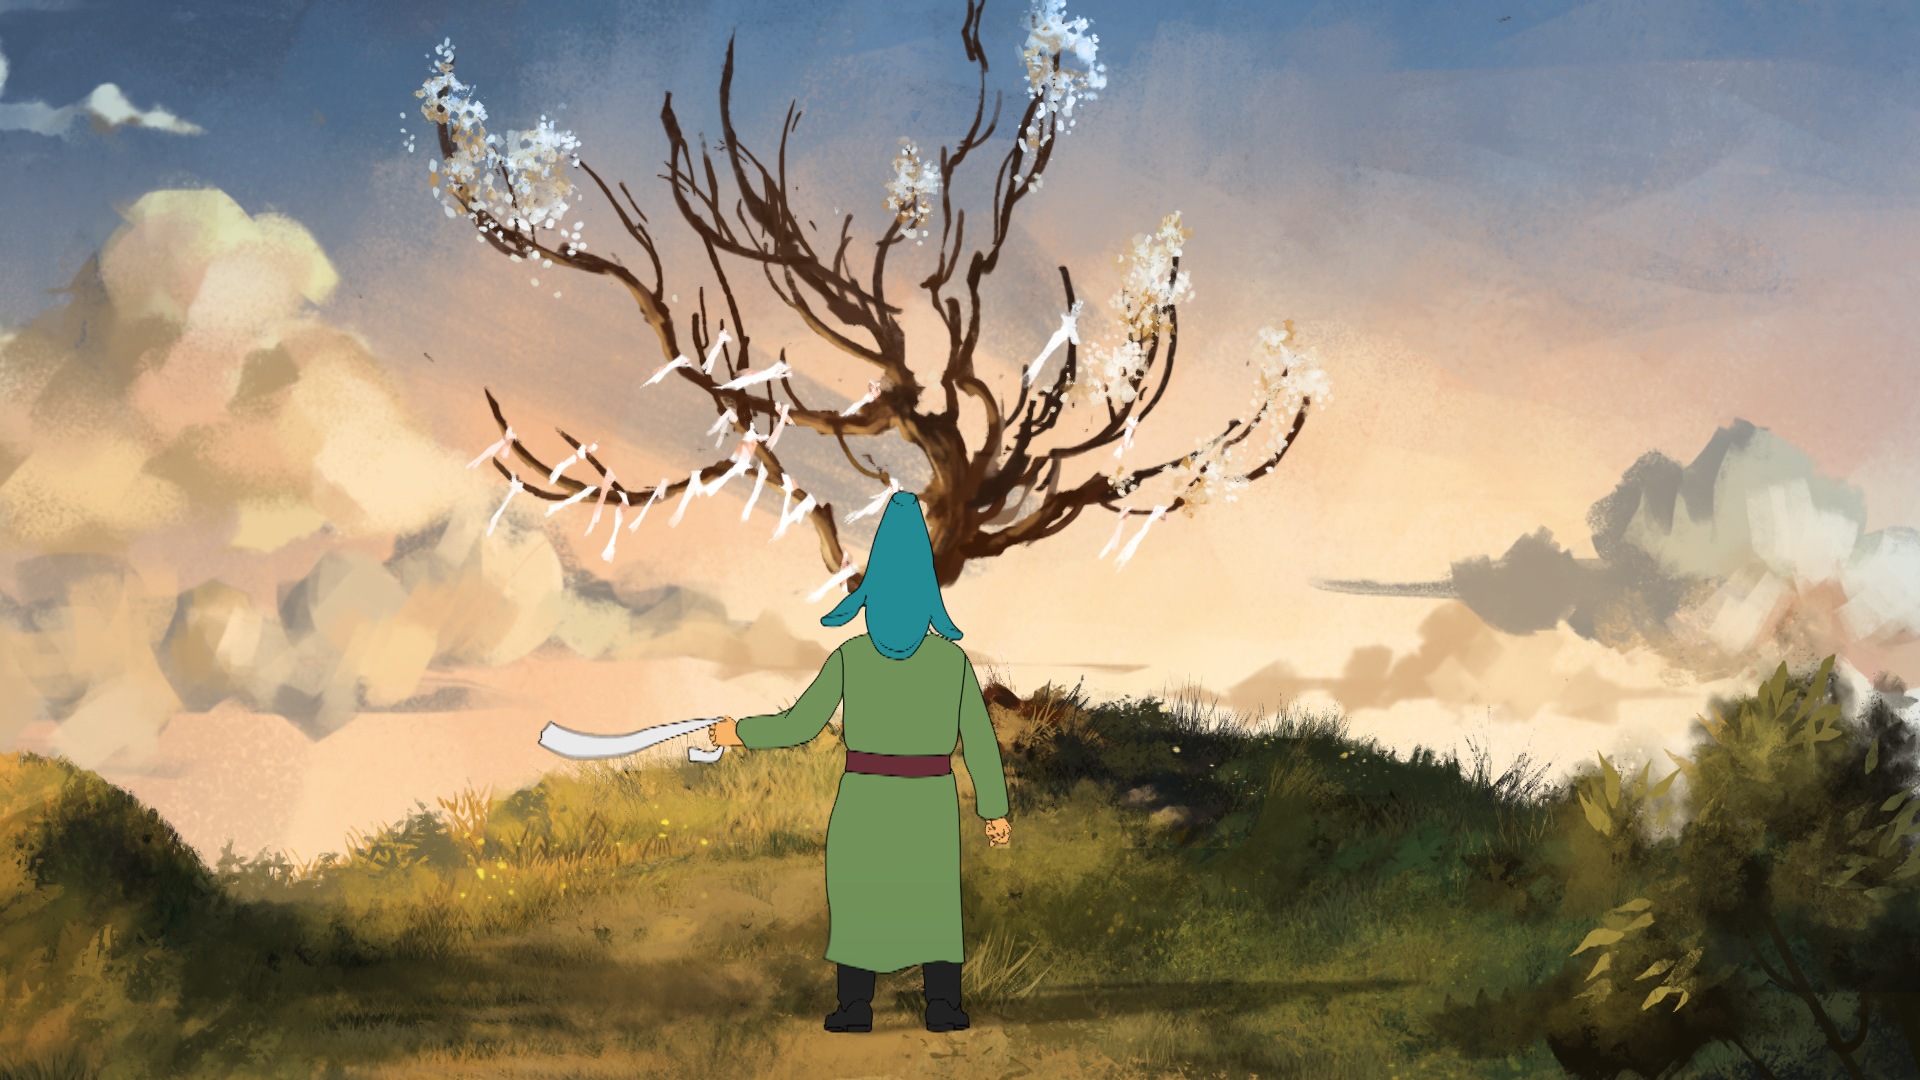 Қазақстандық анимациялық фильм Испанияда өткен фестивальде үздік атанды